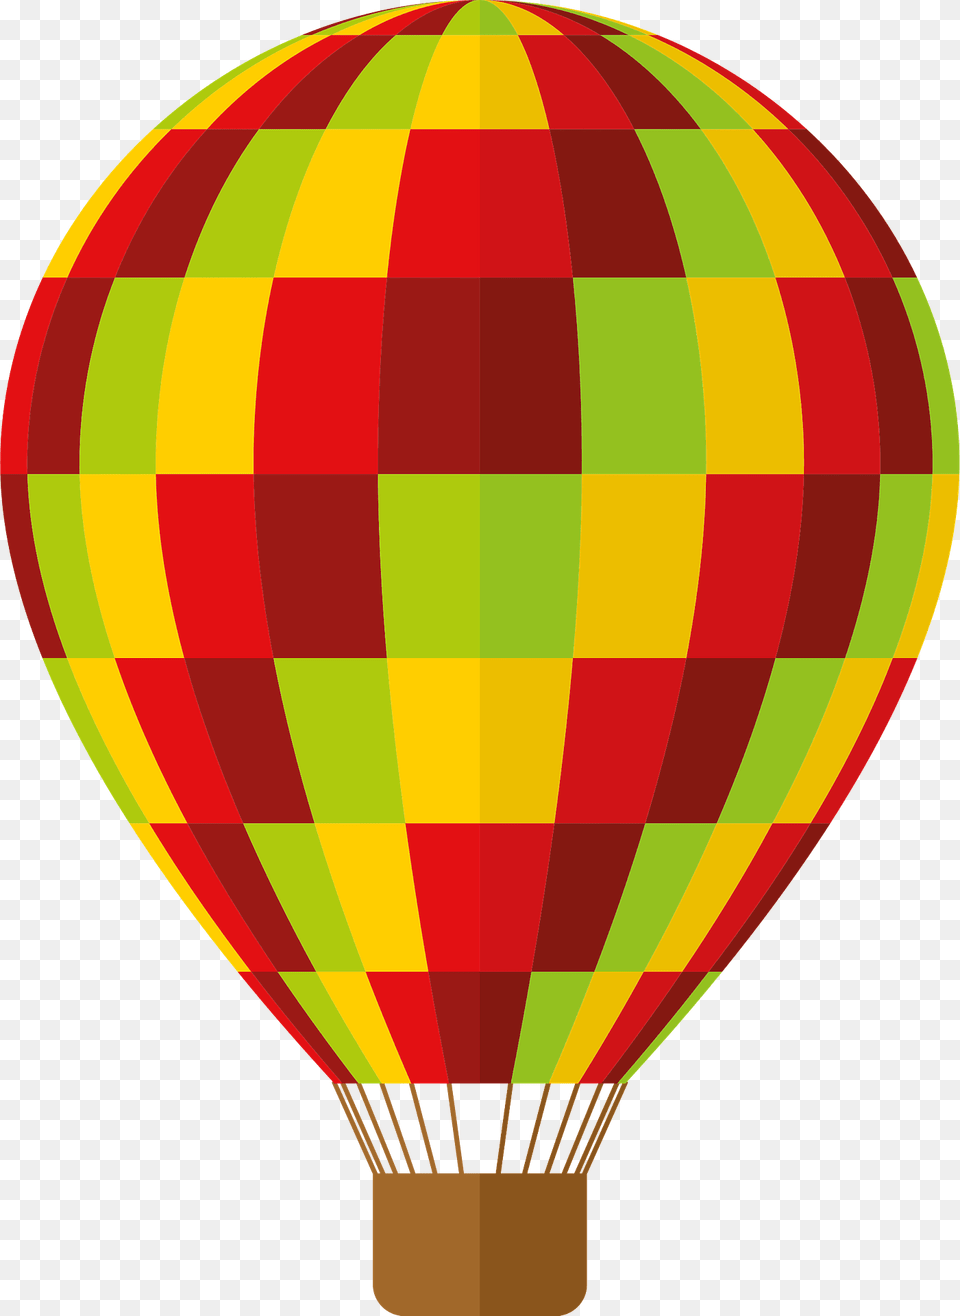 Hot Air Balloon Clipart, Aircraft, Hot Air Balloon, Transportation, Vehicle Png